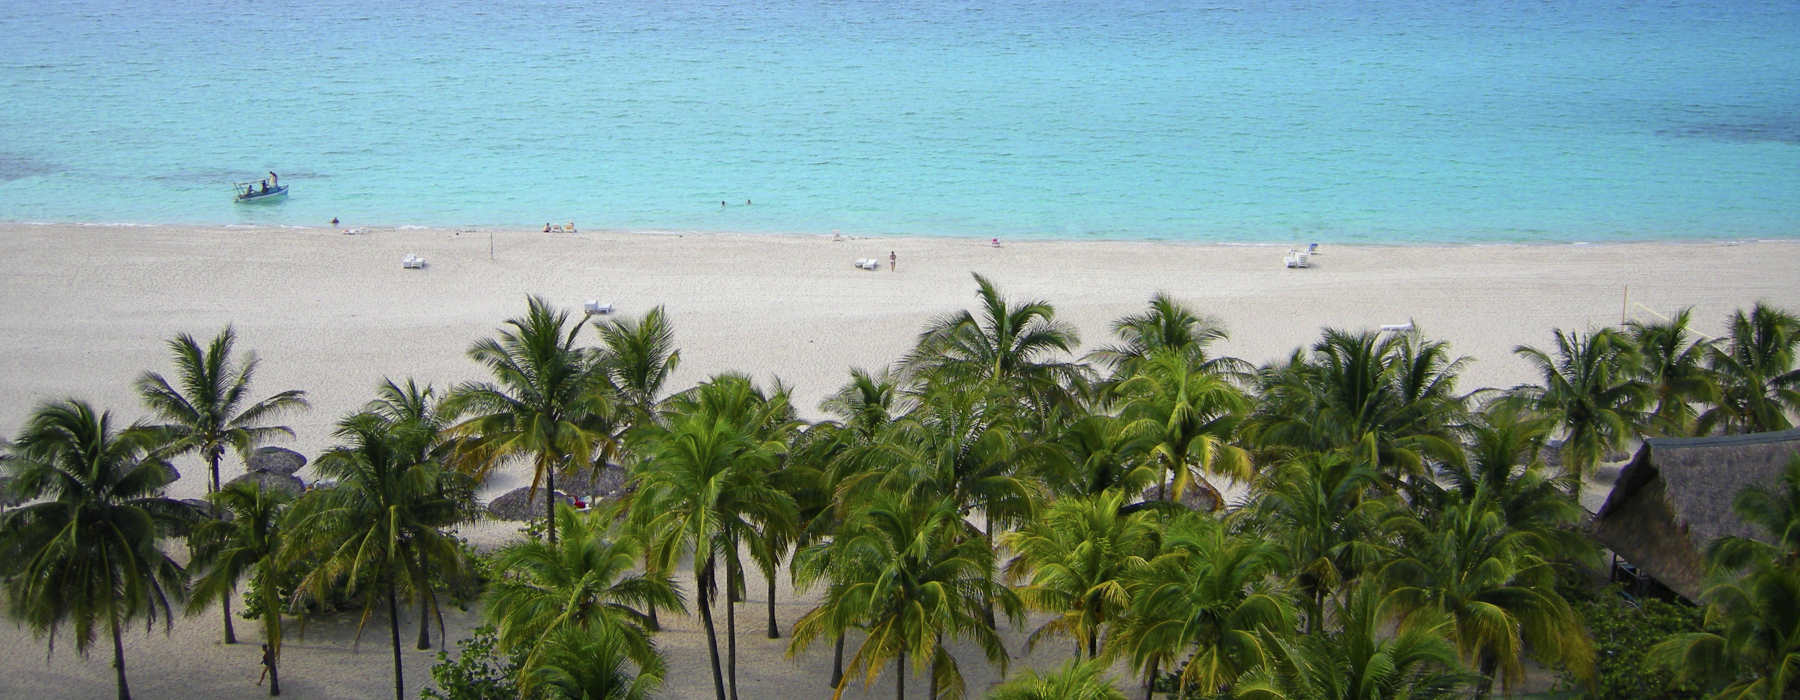  Cuba Beaches Holidays